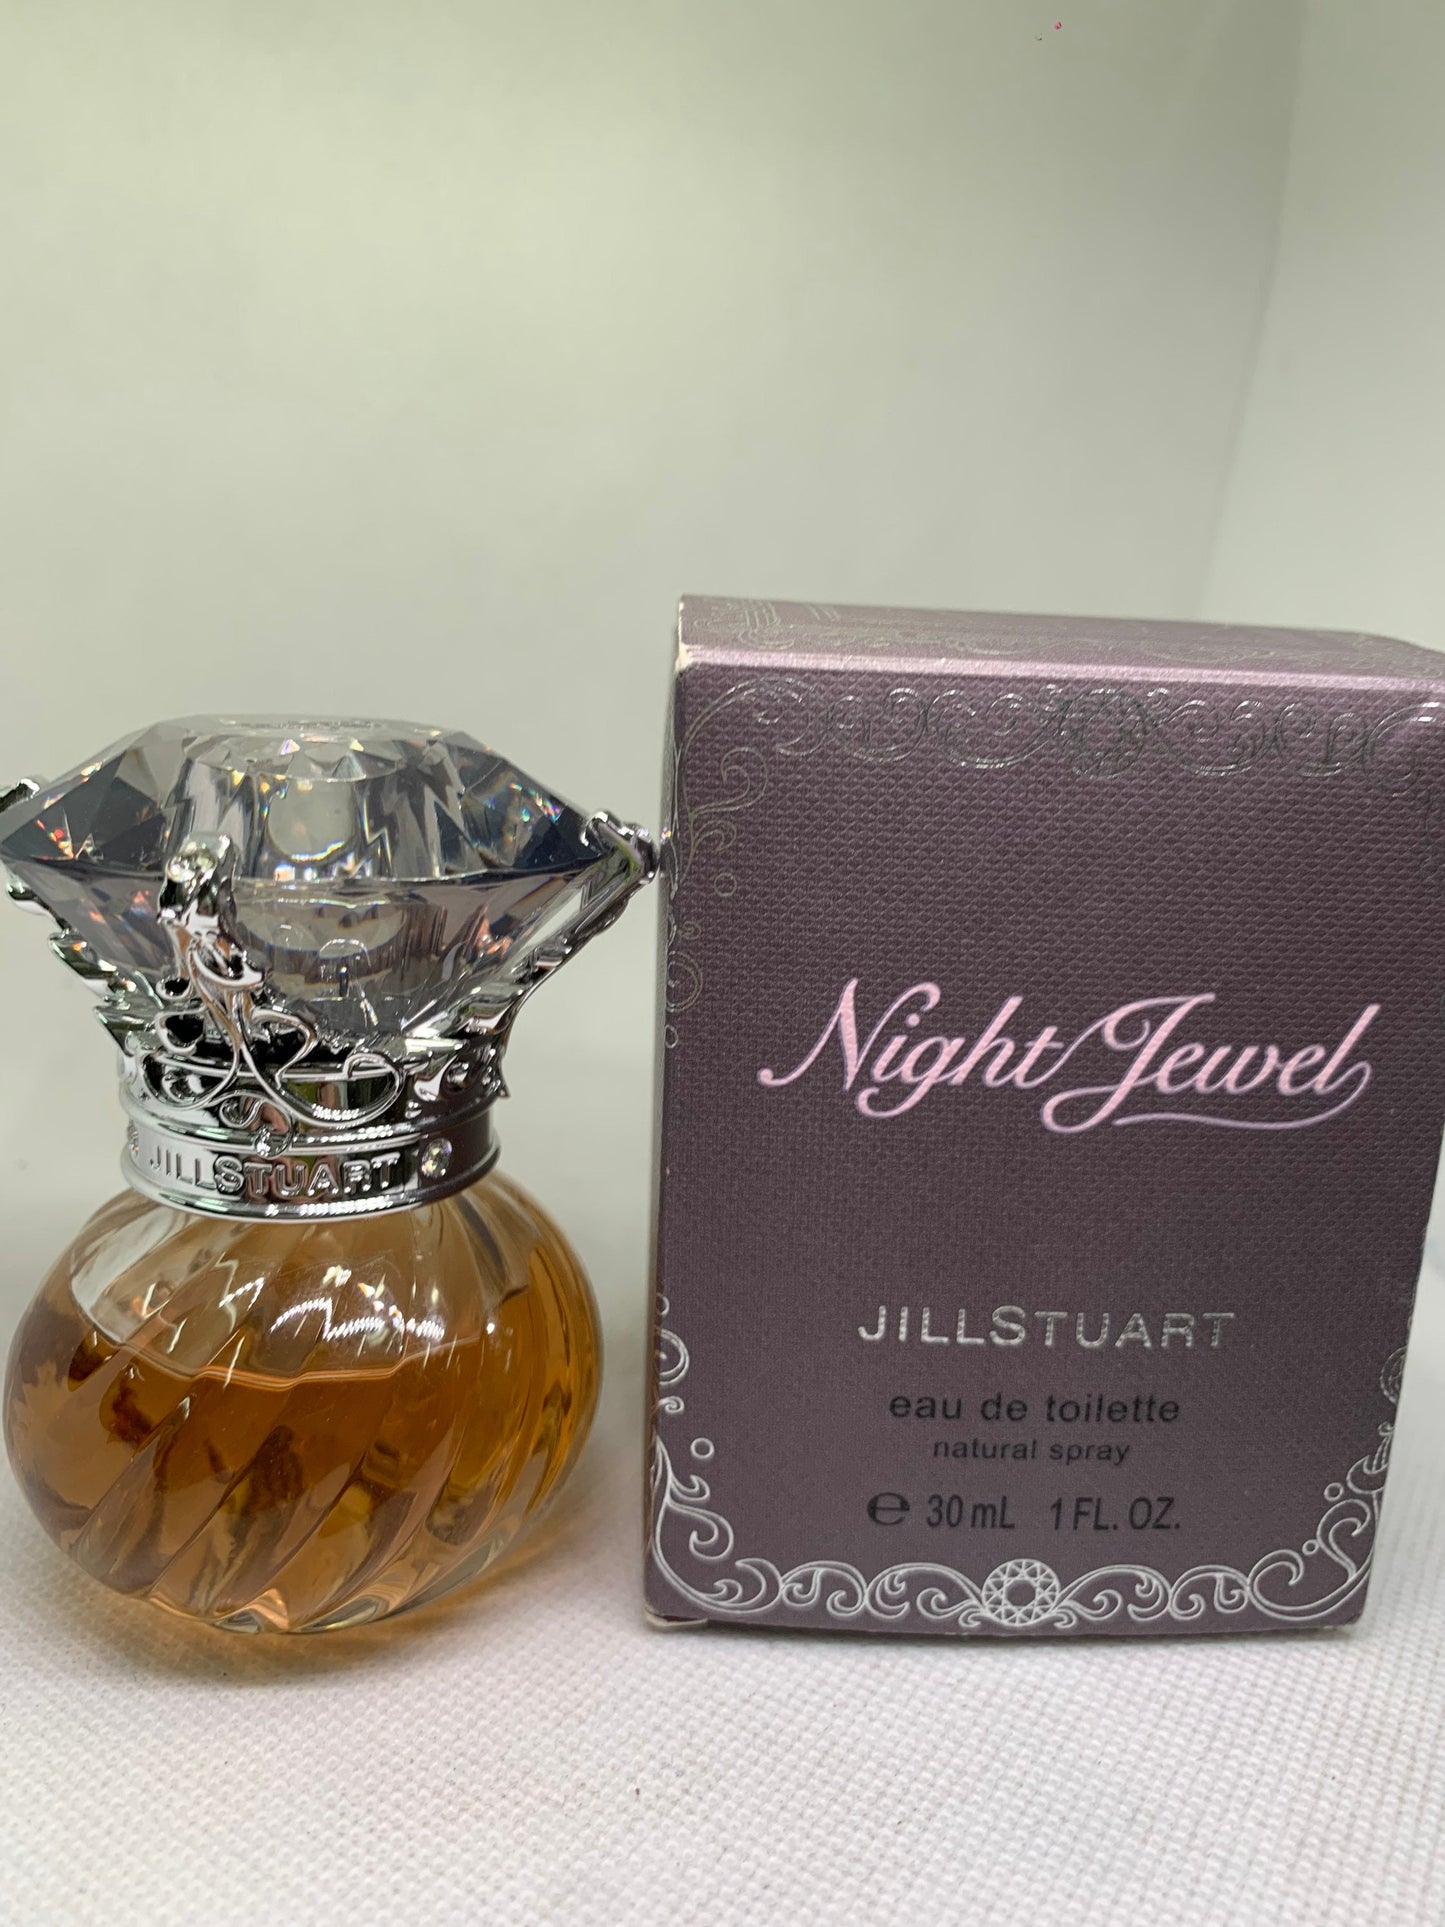 JILLSTART Jill Stewart EDT Night Love Lady NightJewel Eau de Toilette 30 ml 1 Fl oz Floral (bb 21 Apr 22)